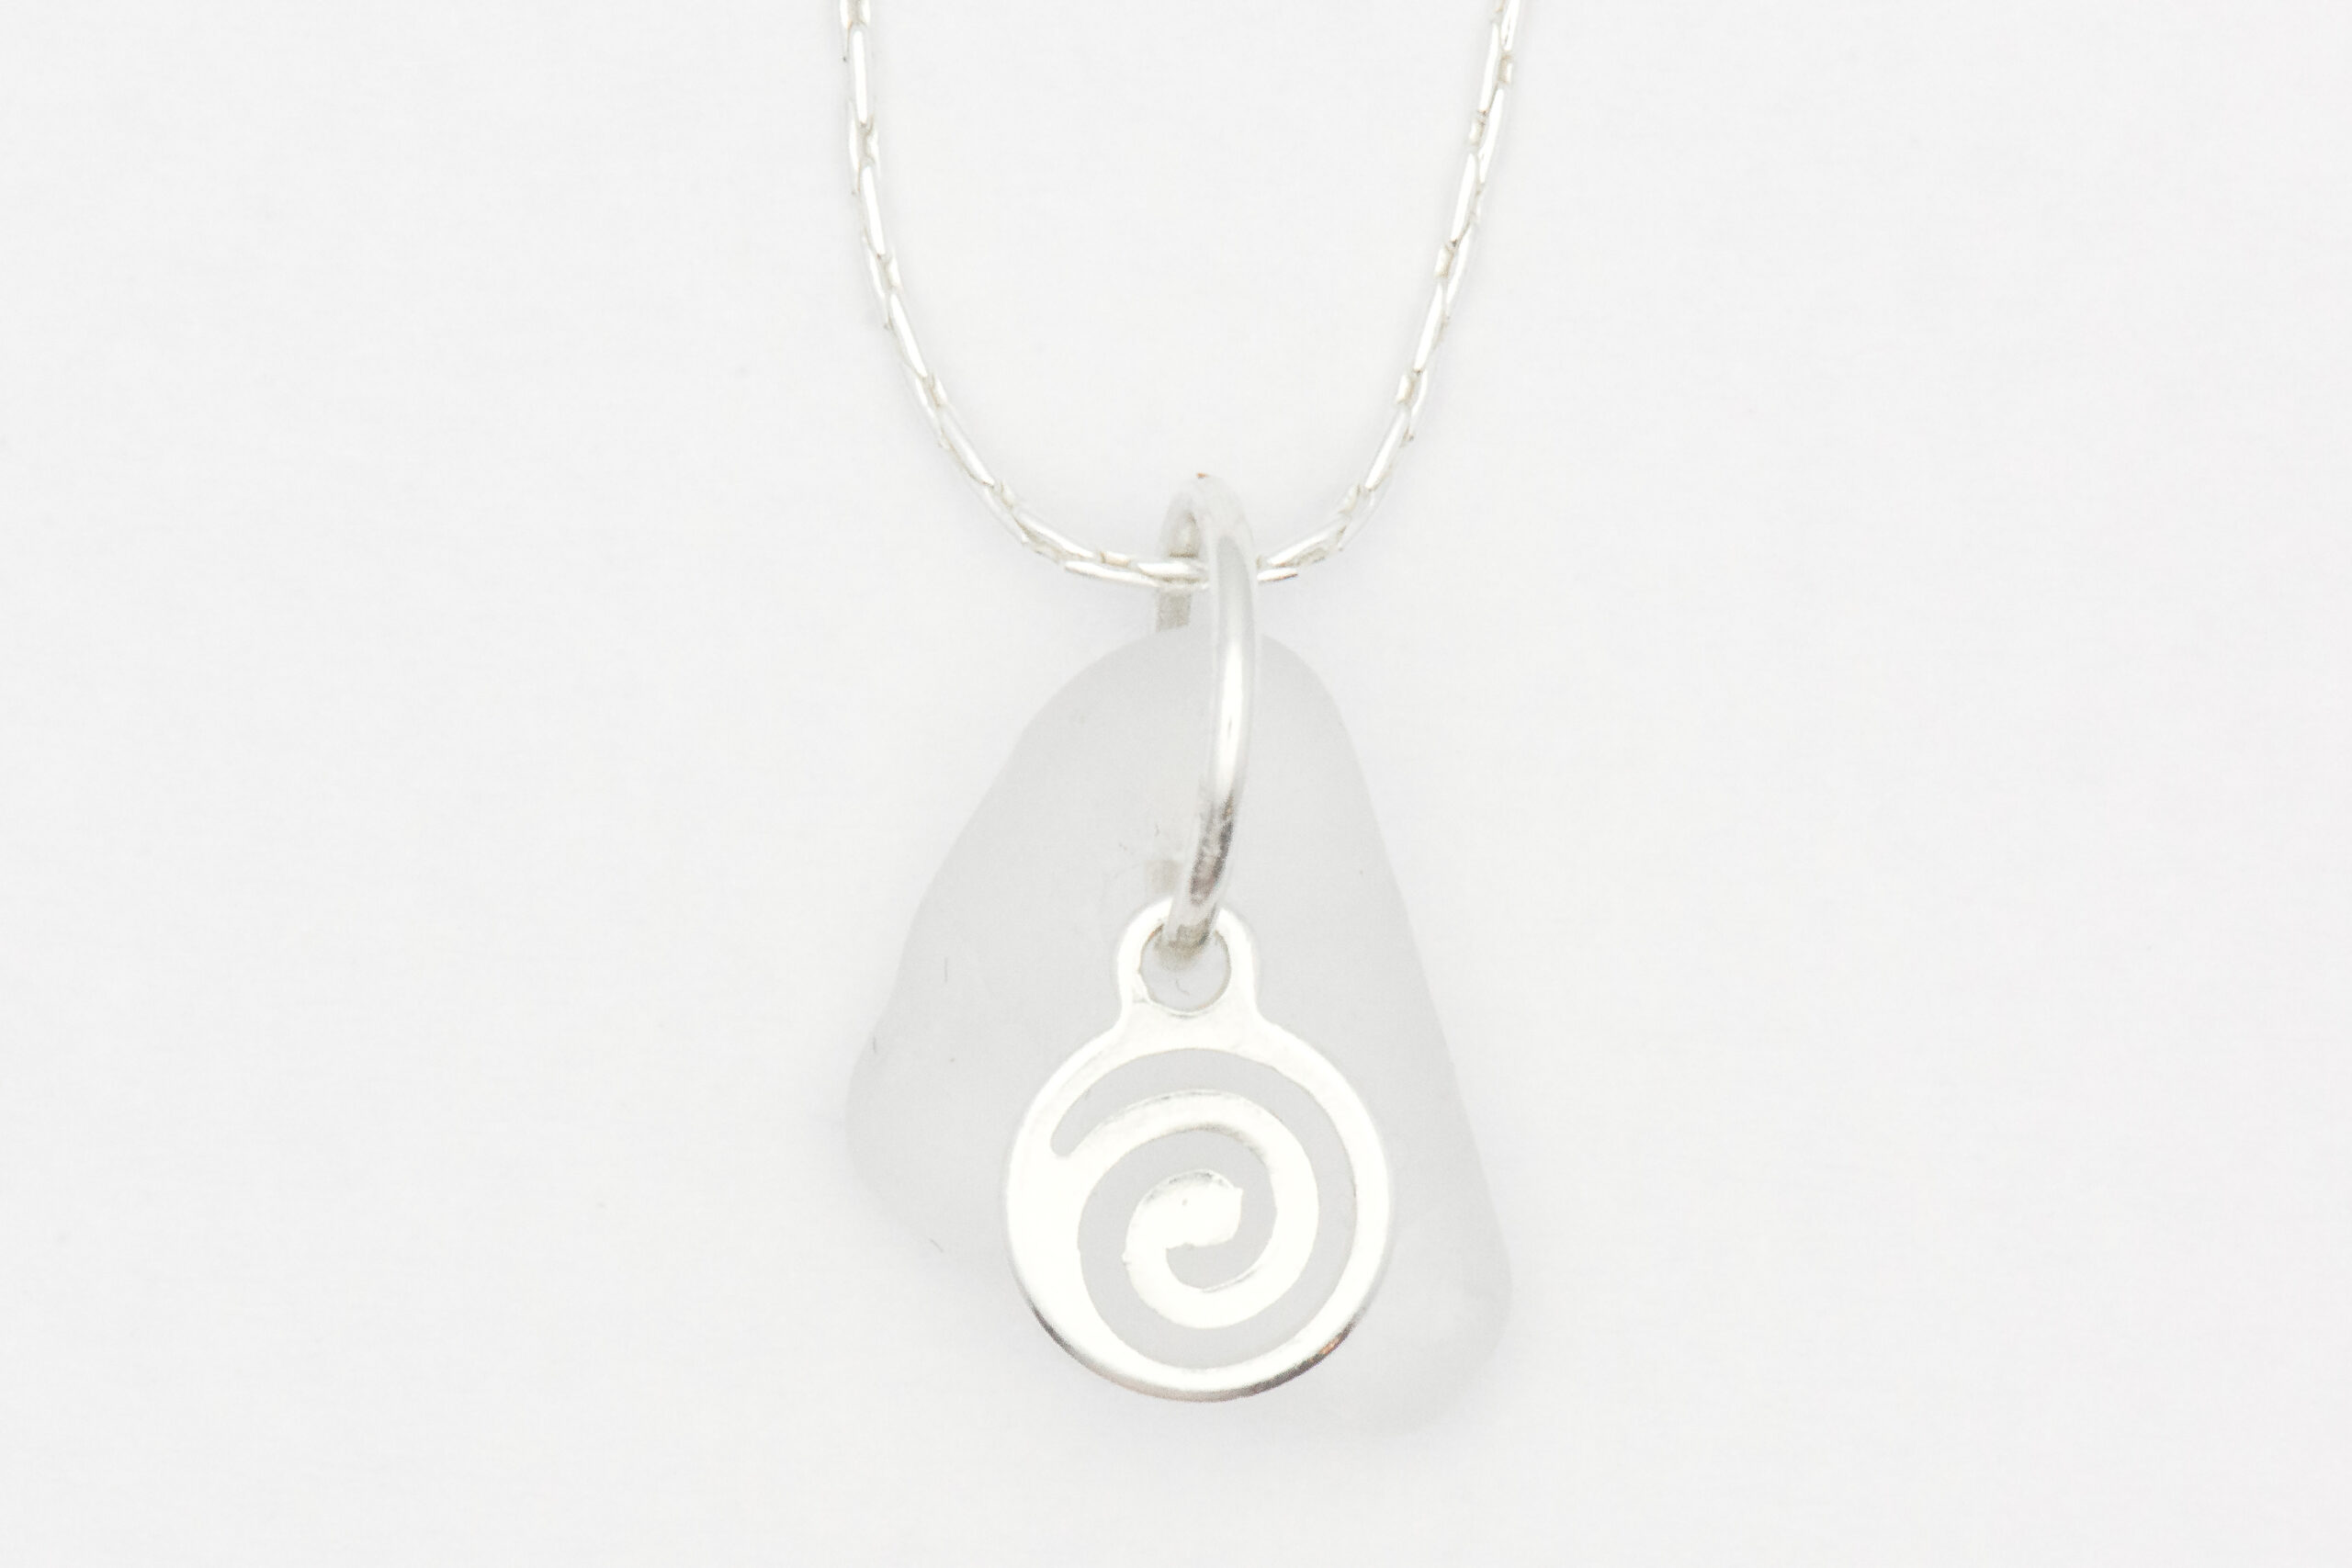 Spiral White Sea Glass Necklace